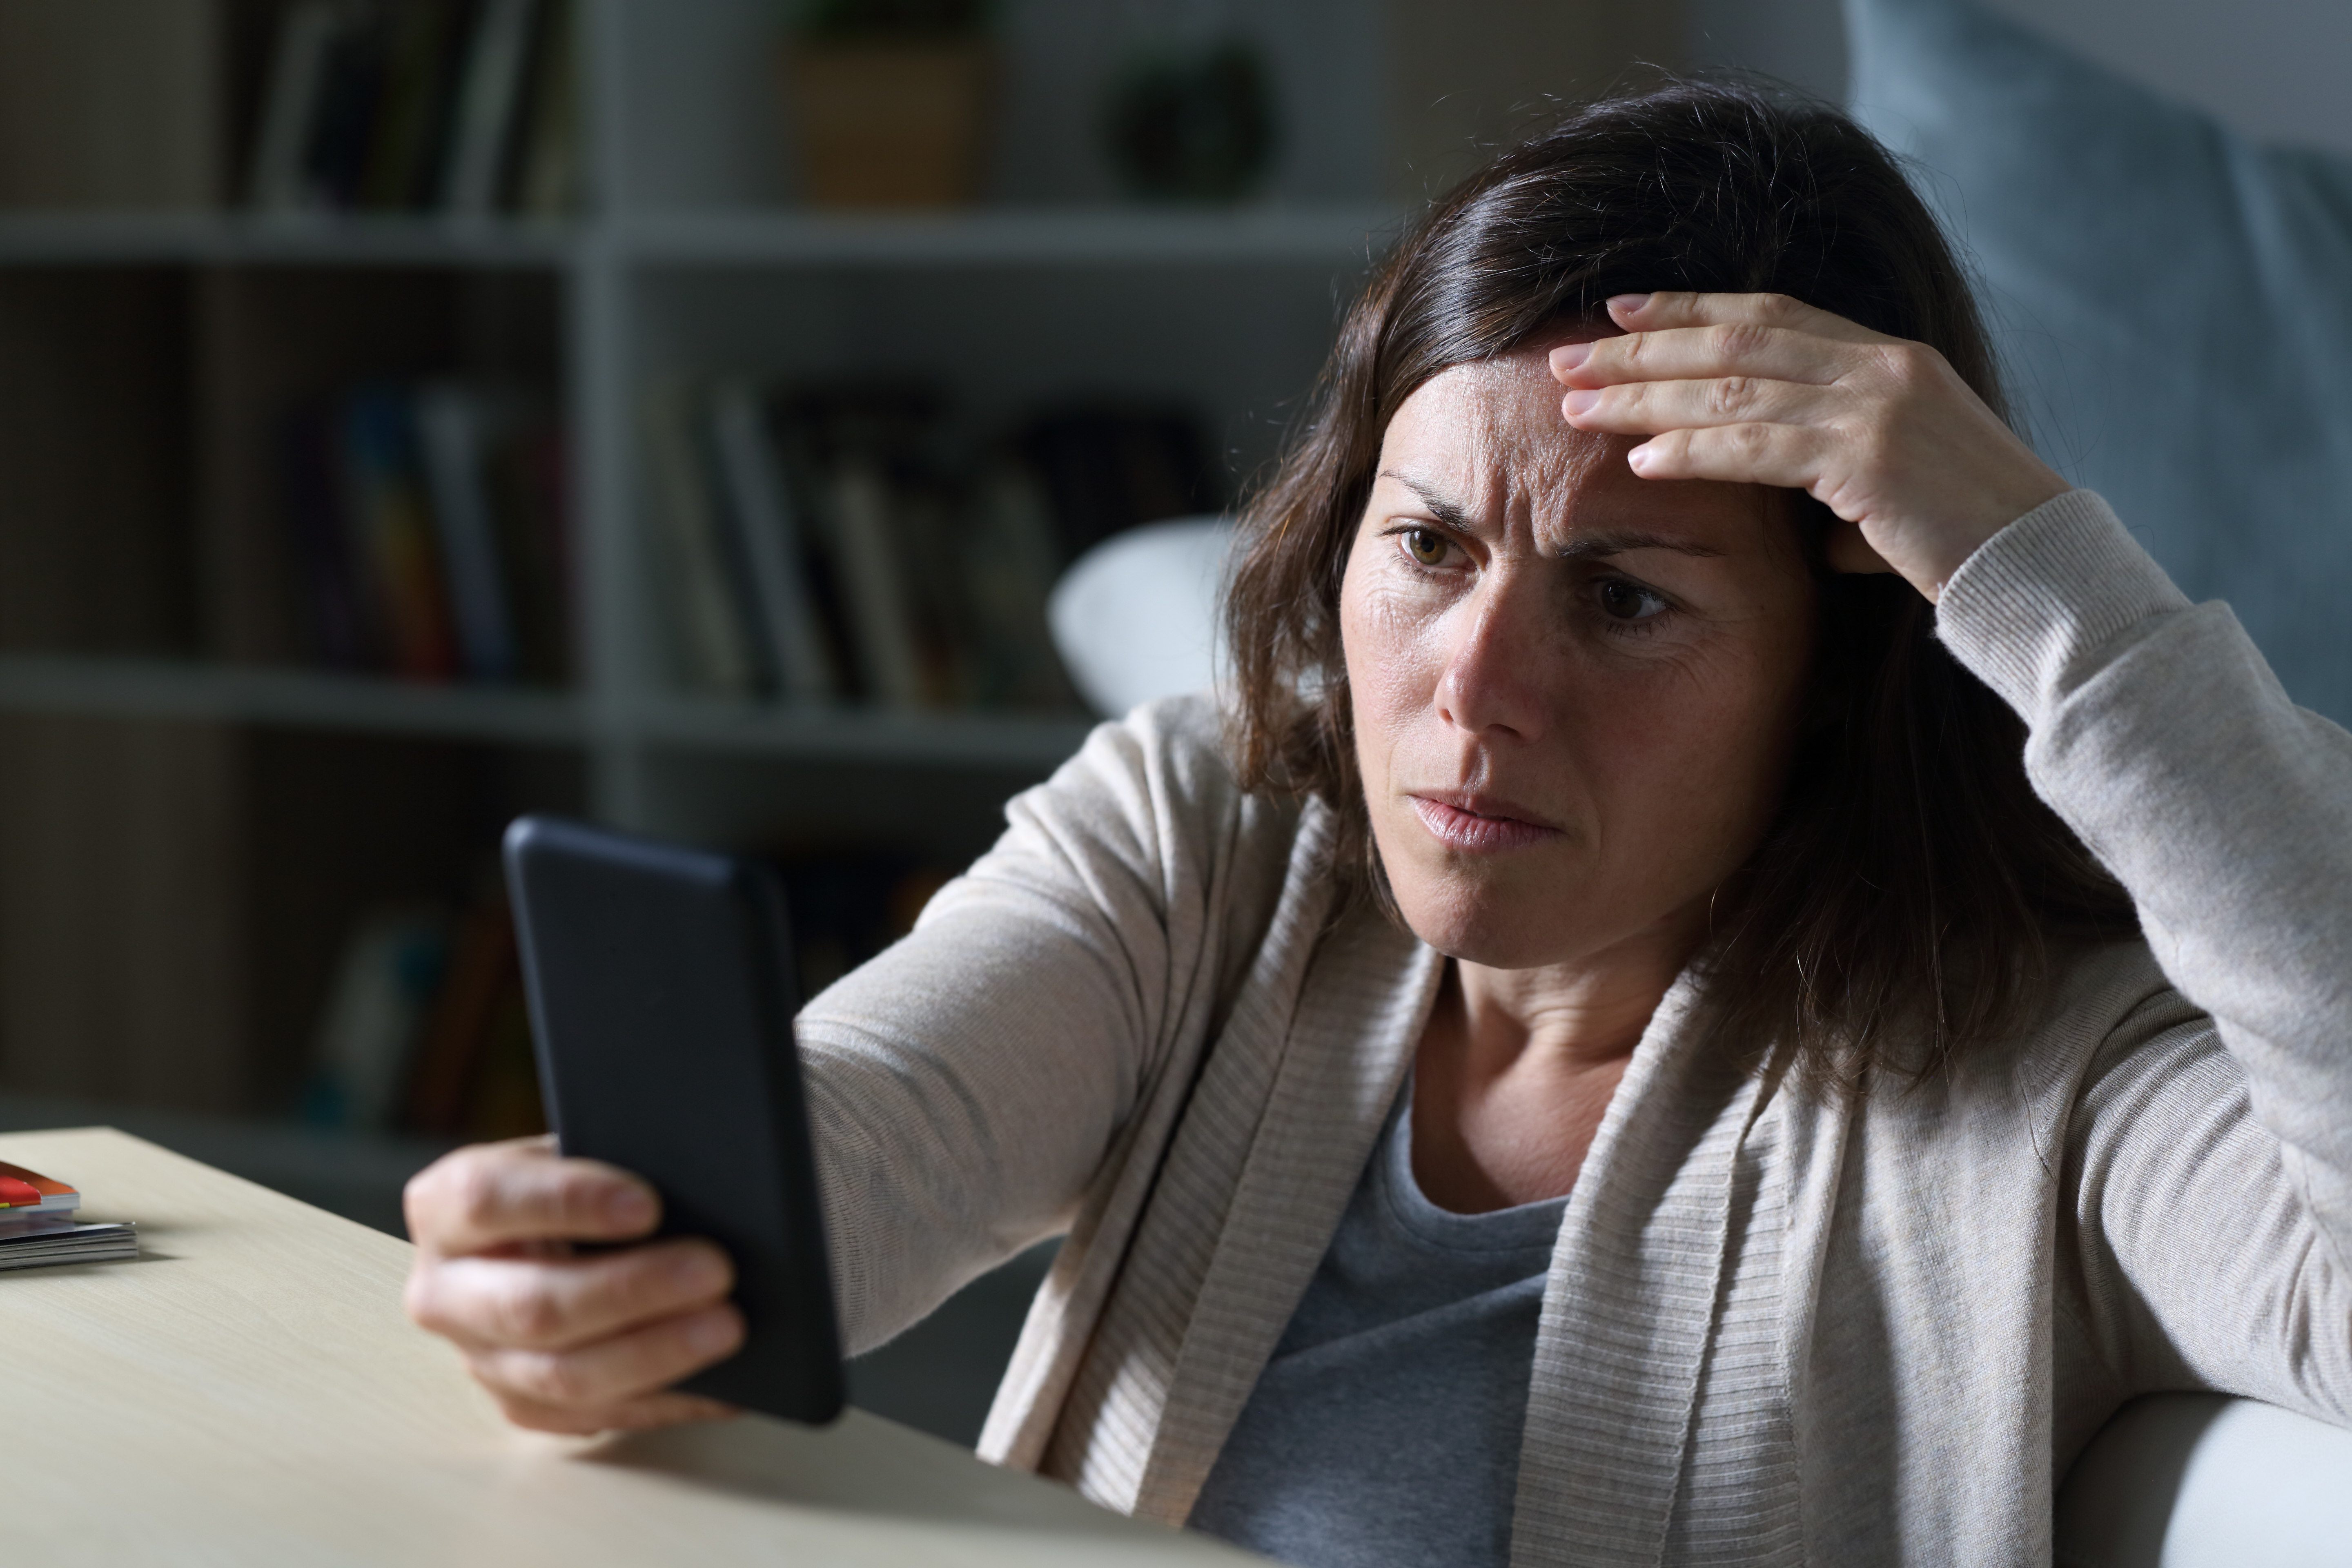 Une femme à l'air inquiet tout en regardant un téléphone | Source : Shutterstock